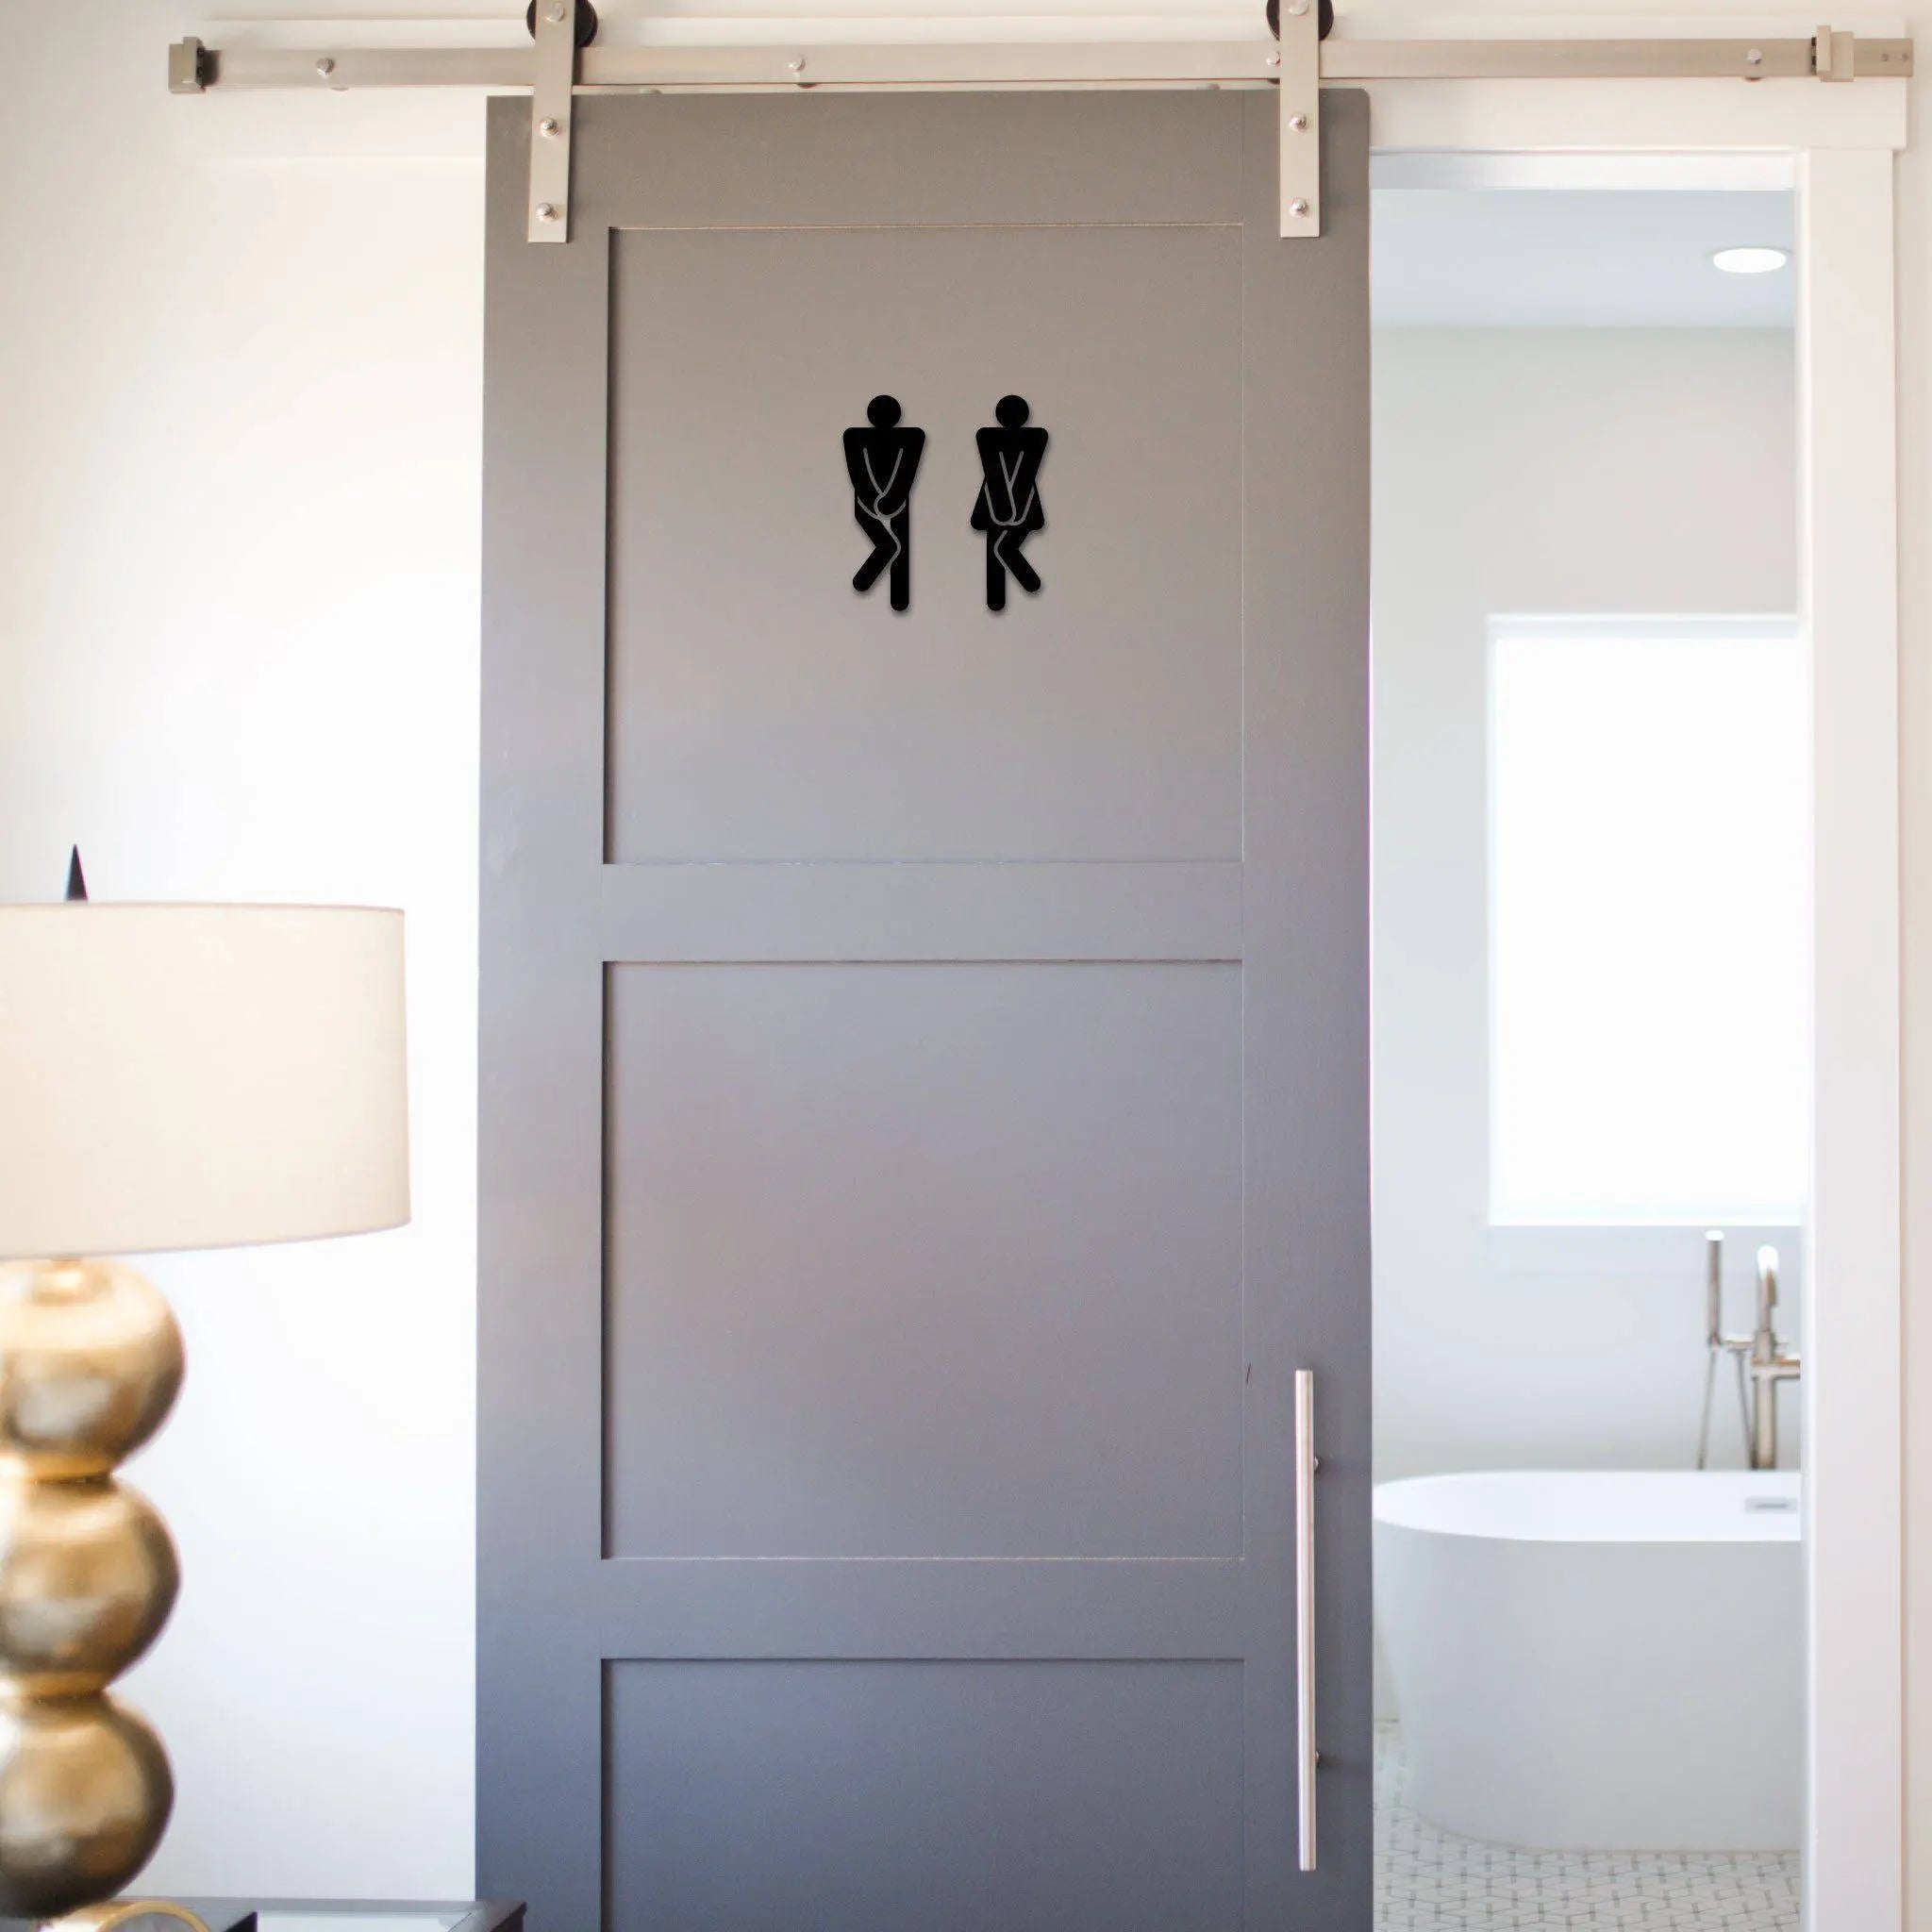 Steelmonks-Metallschild,Toiletten Figuren. Standard Wanddekoration erhältlich in verschiednen Größen und Farben.